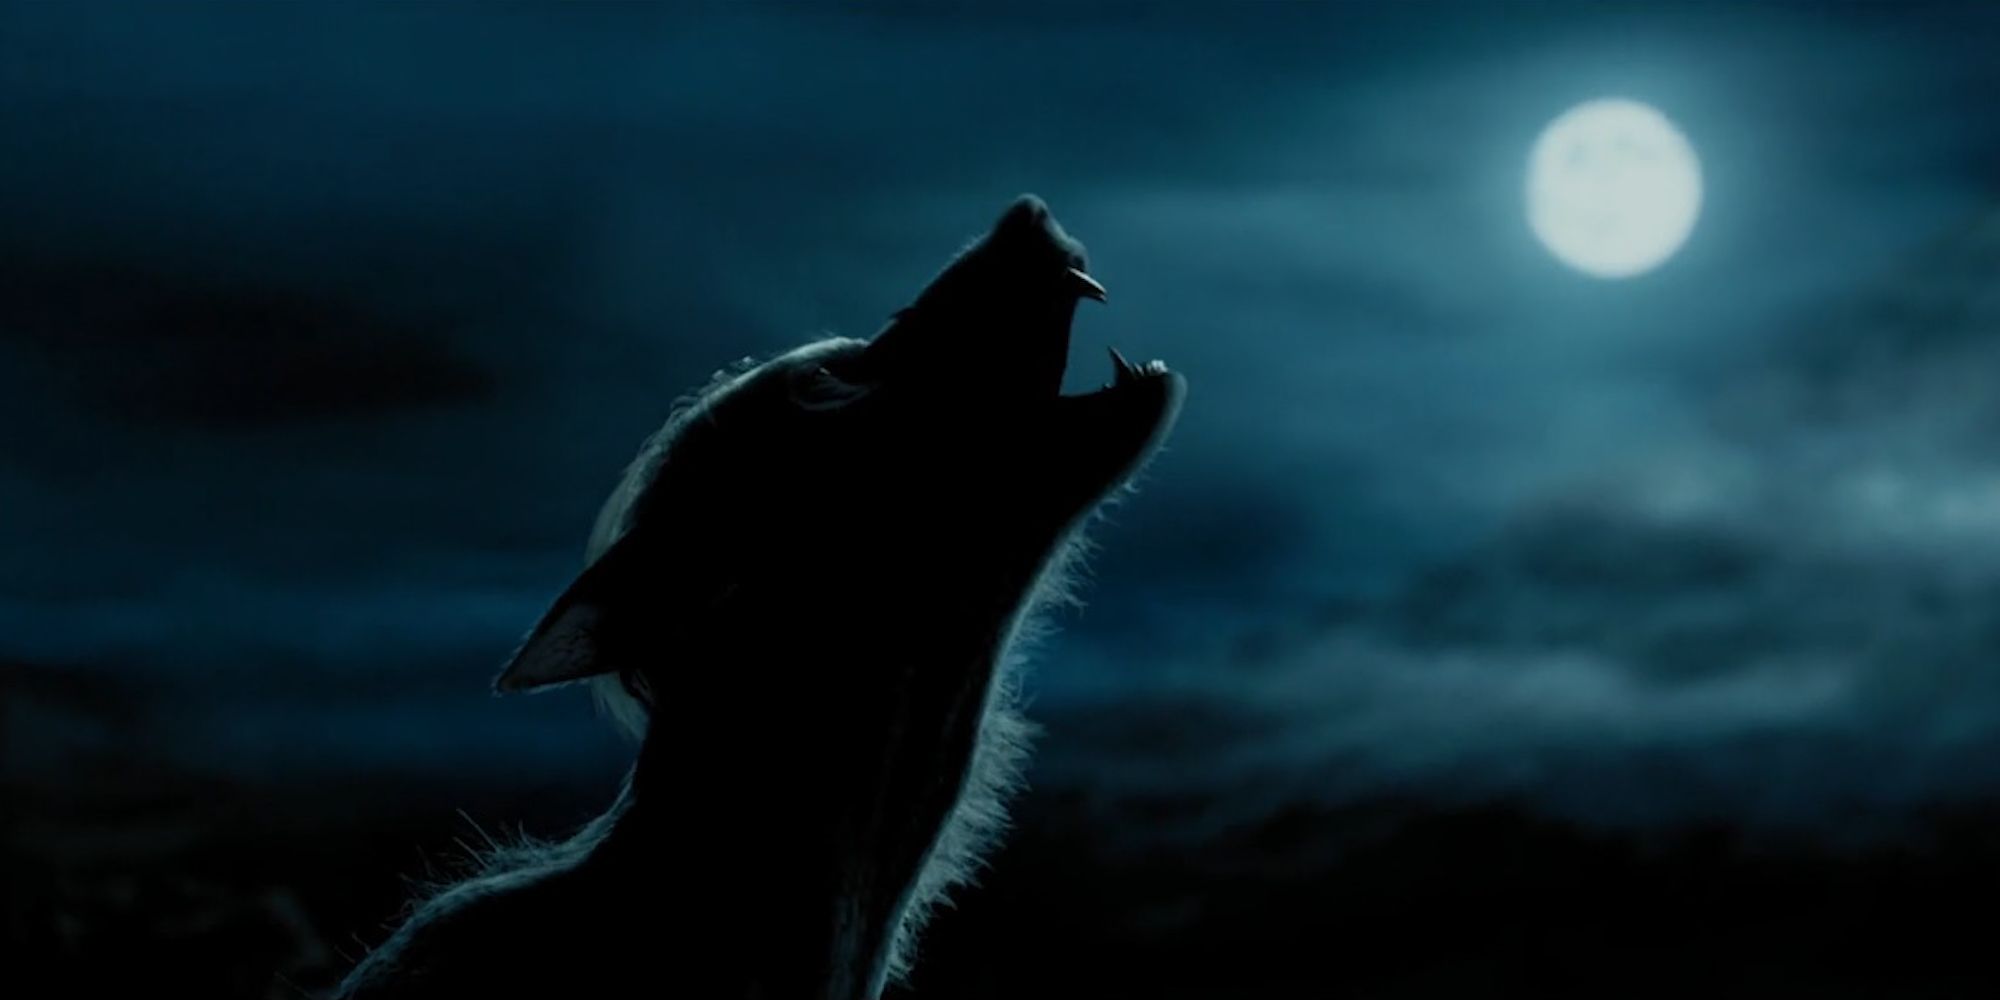 Lupin werewolf form